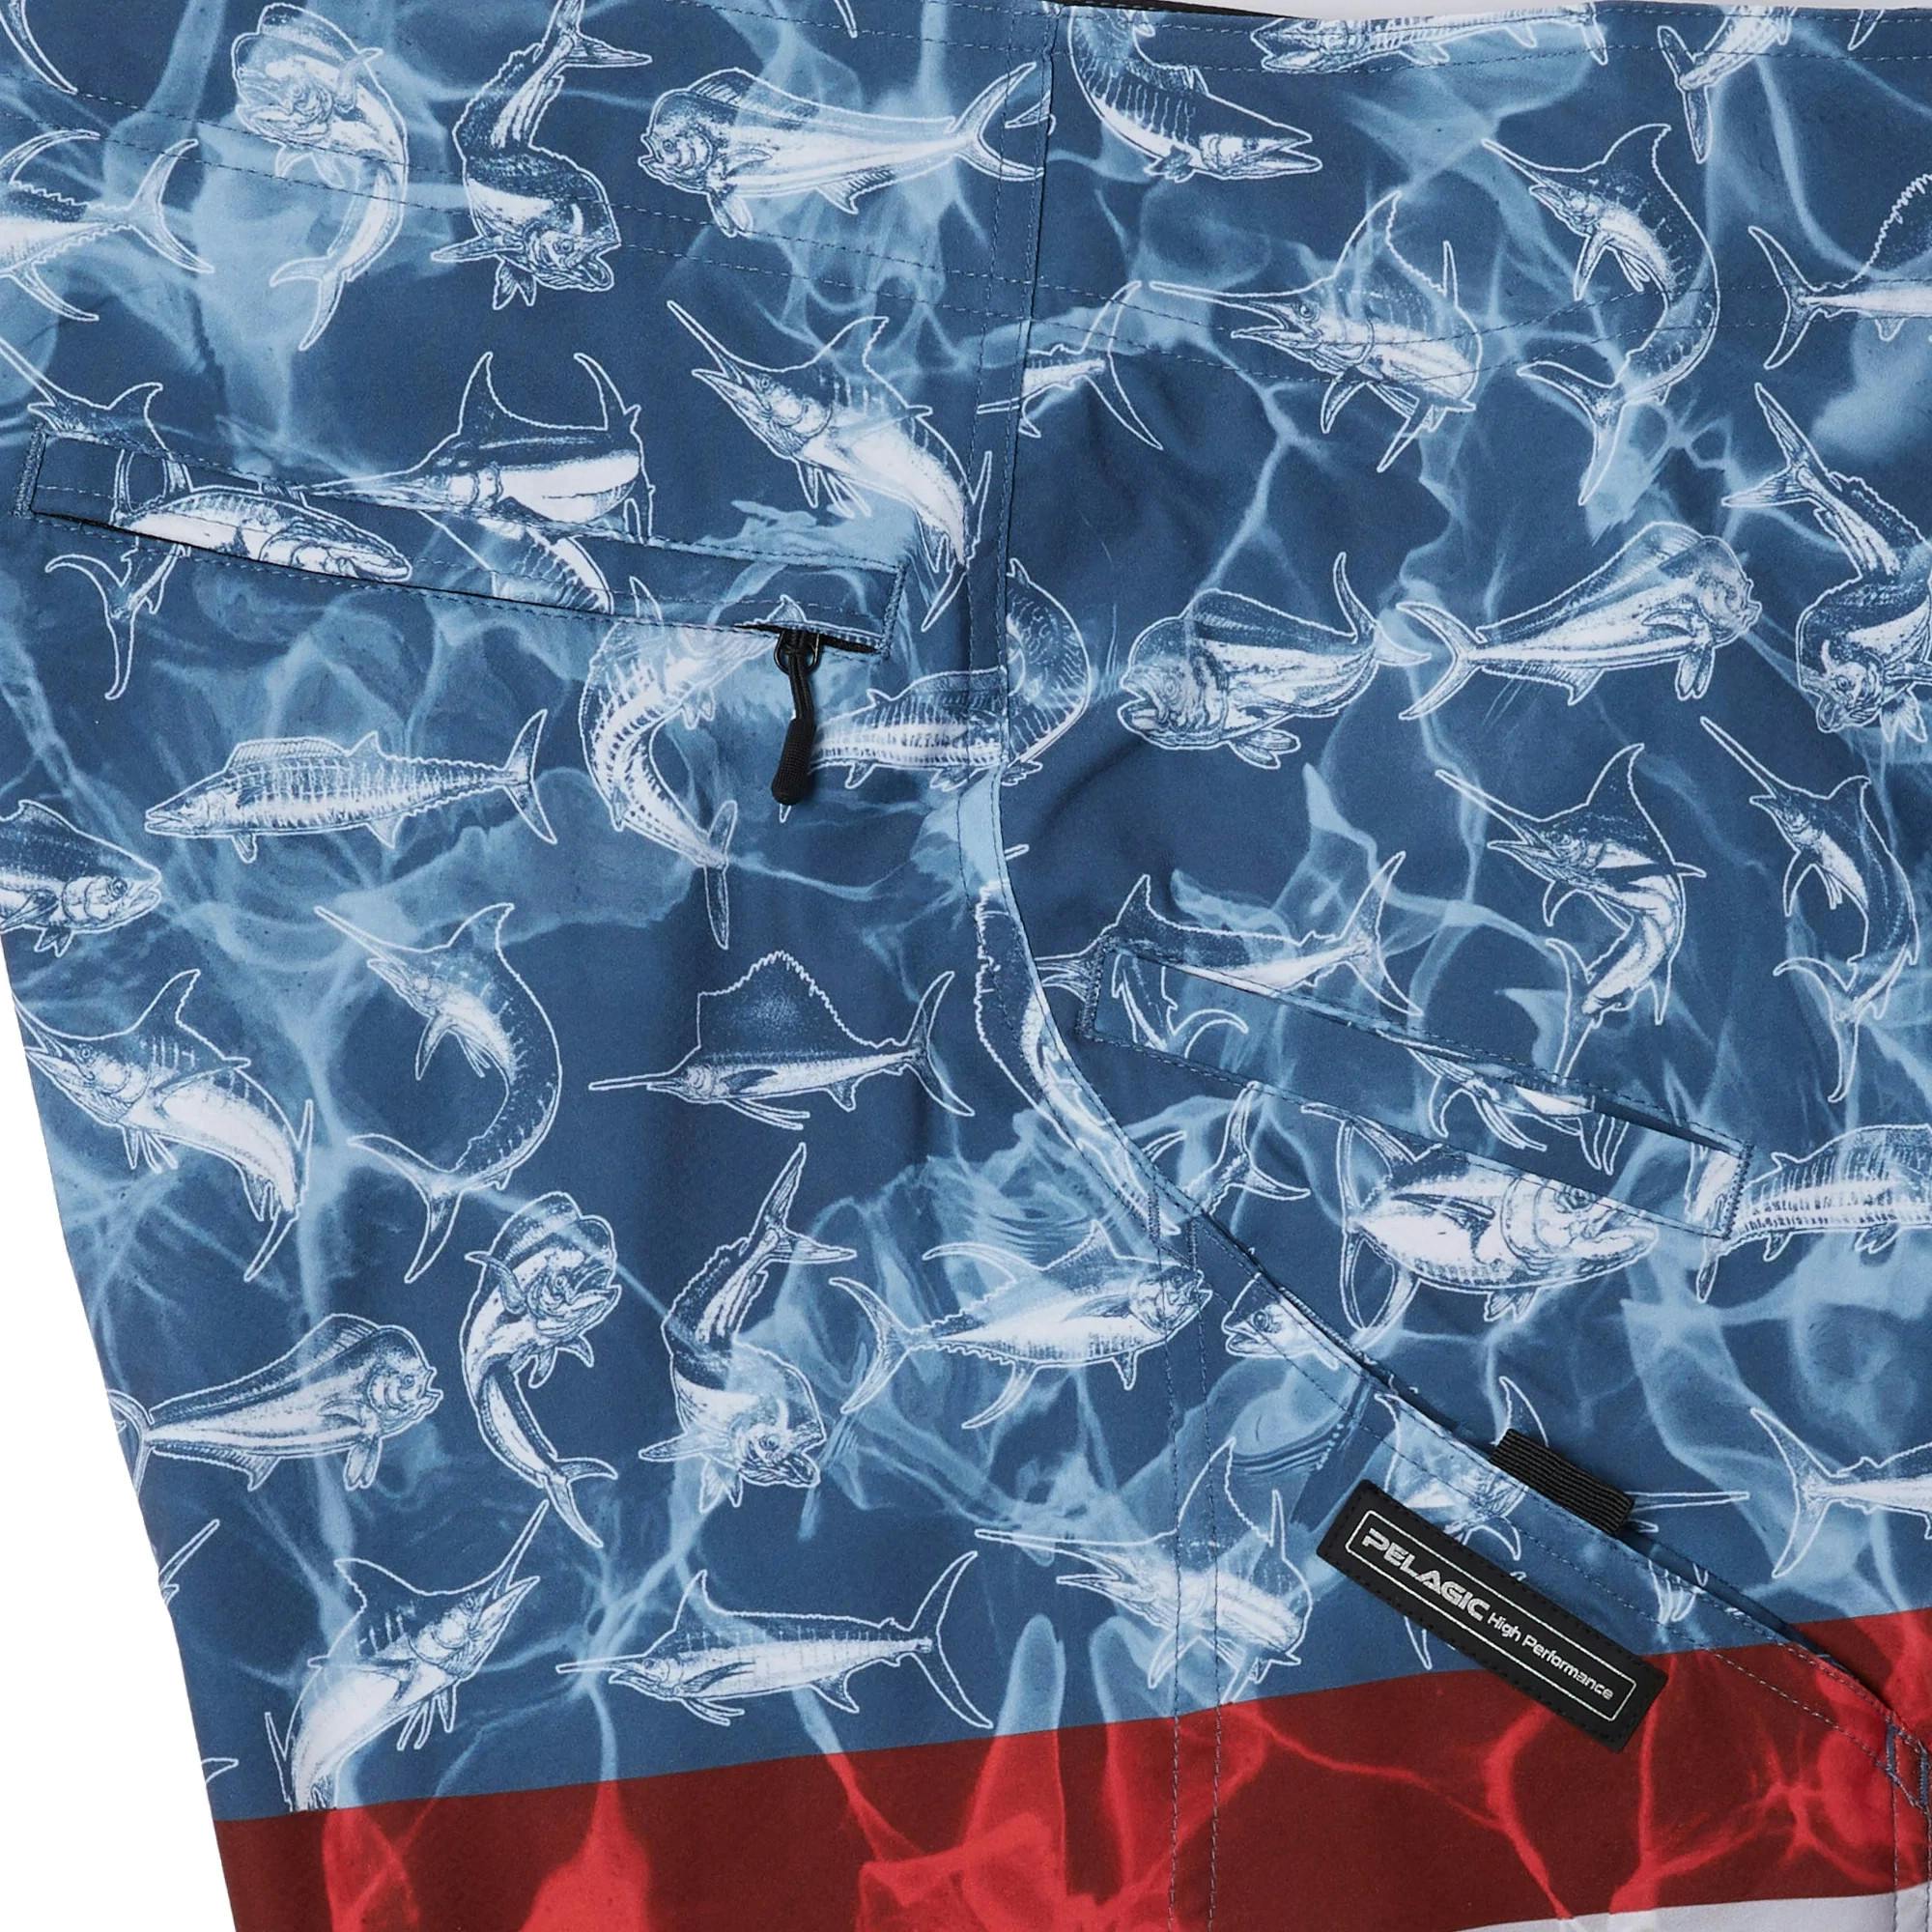 Pelagic Sharkskin Americamo Fishing Shorts (Men's) Side Close - Smokey Blue